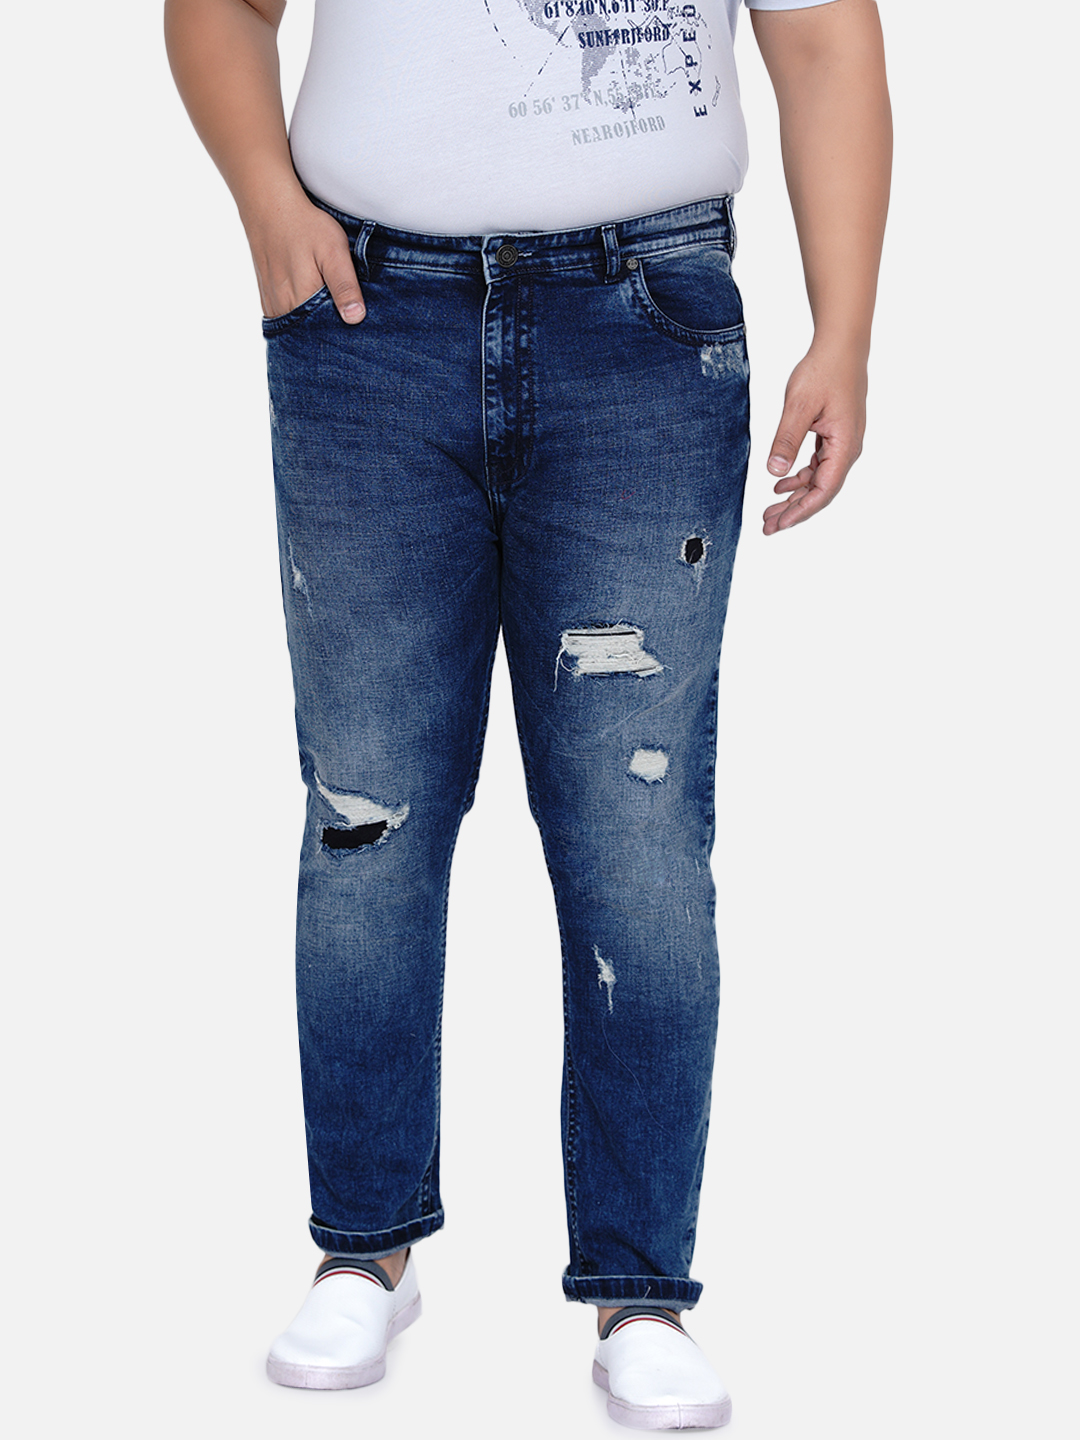 bottomwear/jeans/JPJ12185/jpj12185-3.jpg